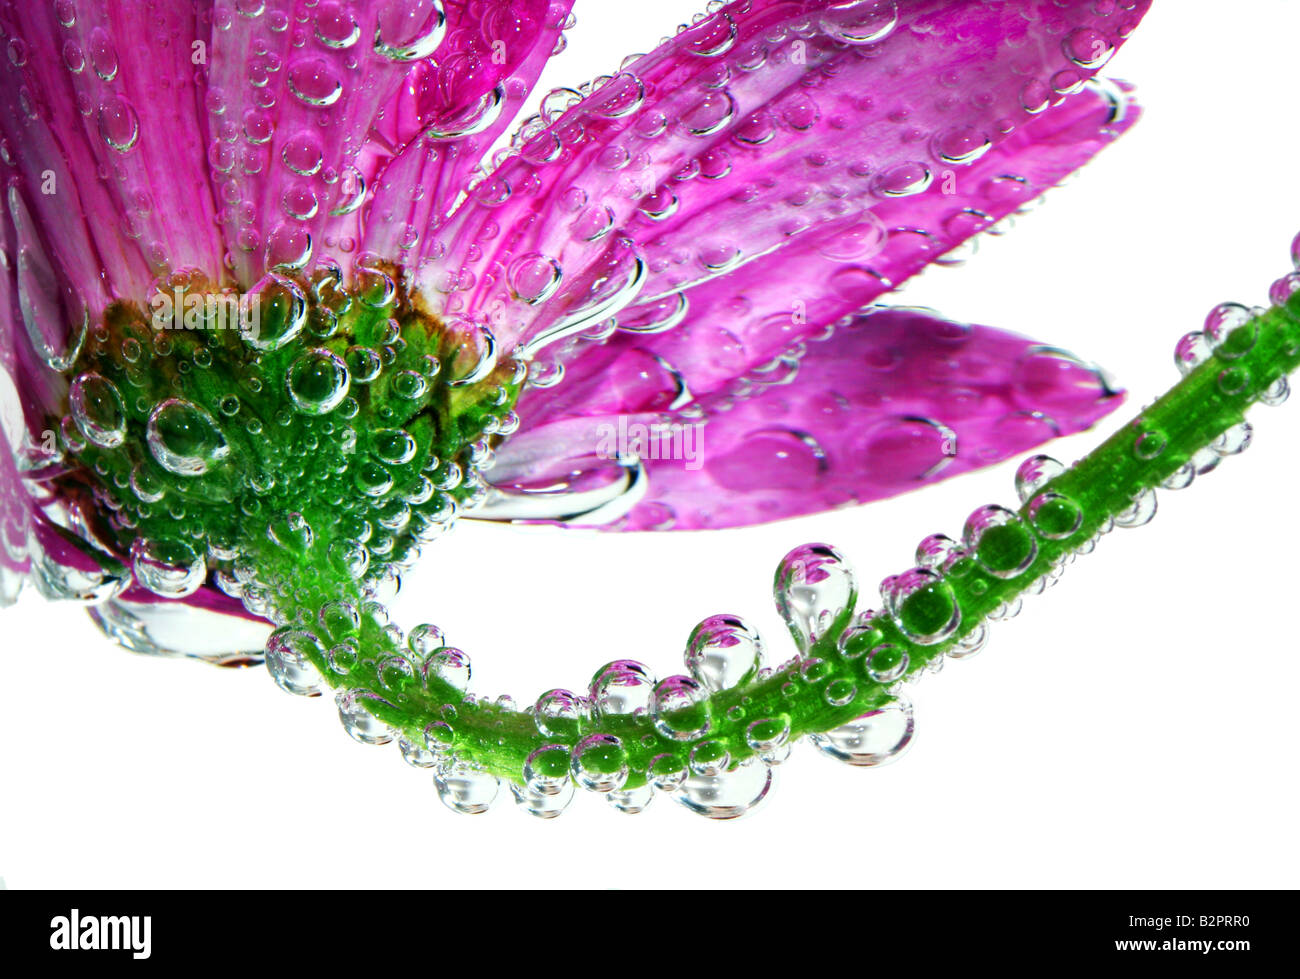 Foto di stock di una pink gerbera daisy coperto da splendidi goccioline riflettente o bolle Foto Stock